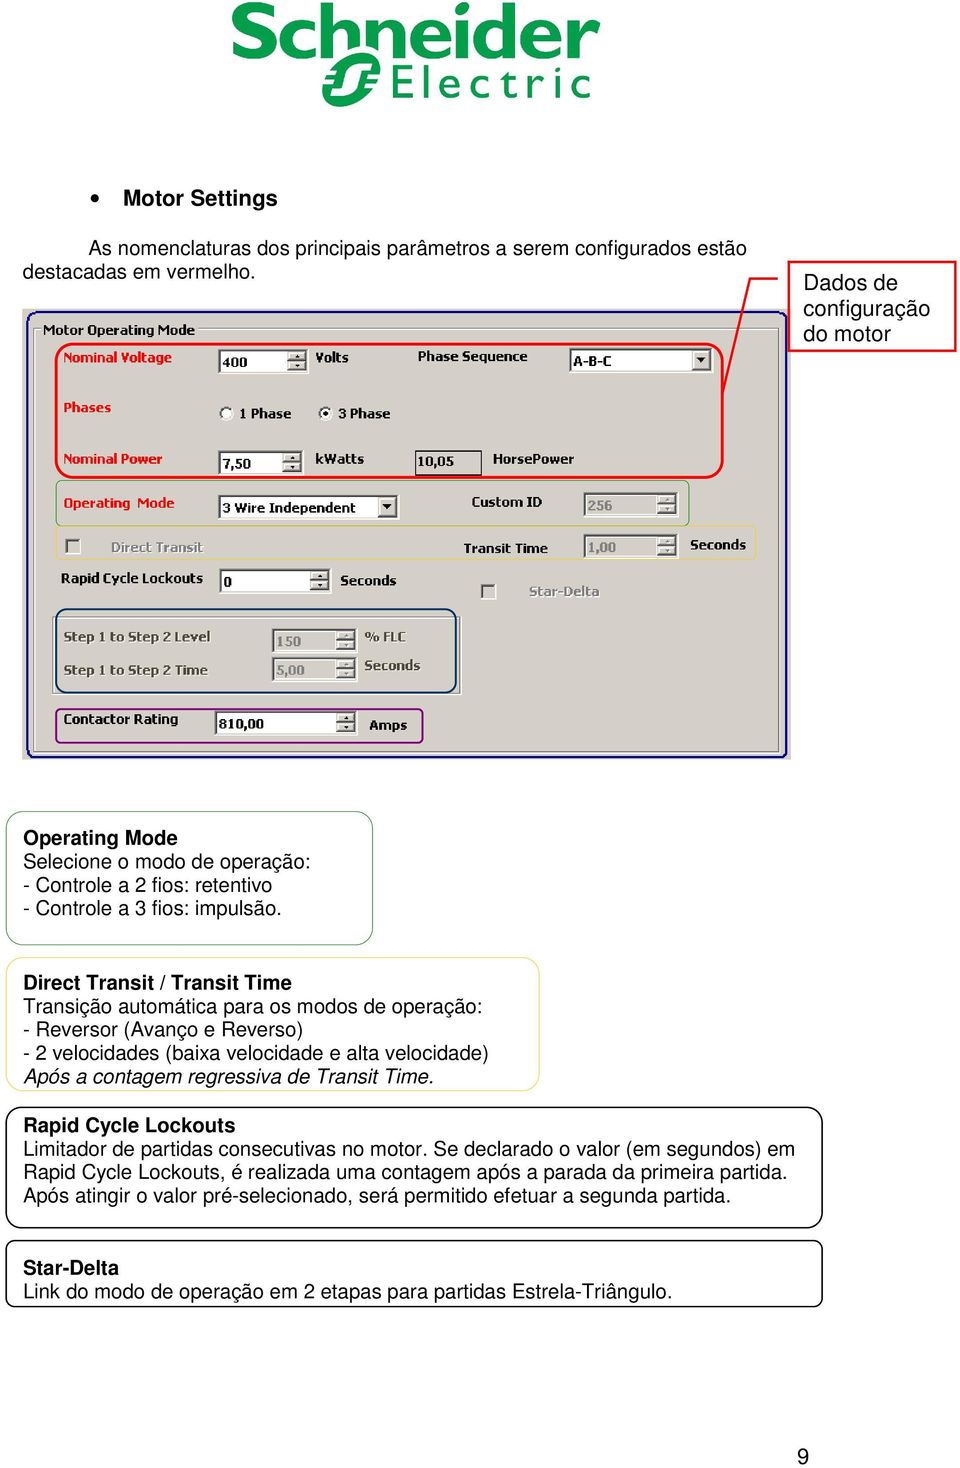 Direct Transit / Transit Time Transição automática para os modos de operação: - Reversor (Avanço e Reverso) - 2 velocidades (baixa velocidade e alta velocidade) Após a contagem regressiva de Transit